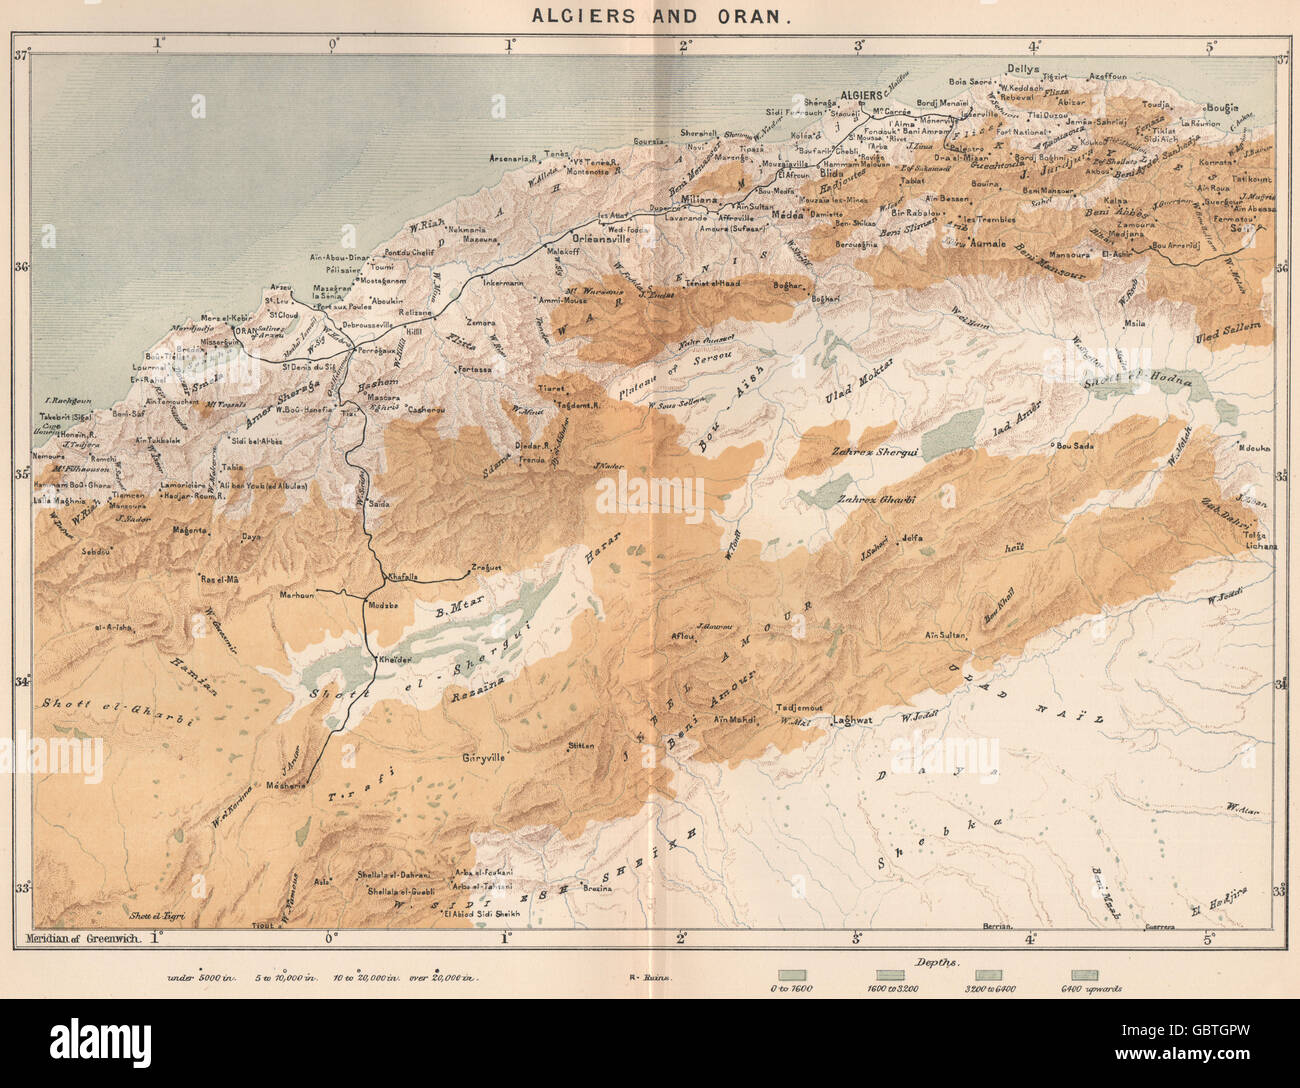 Algiers and Oran. Algeria, 1885 antique map Stock Photo